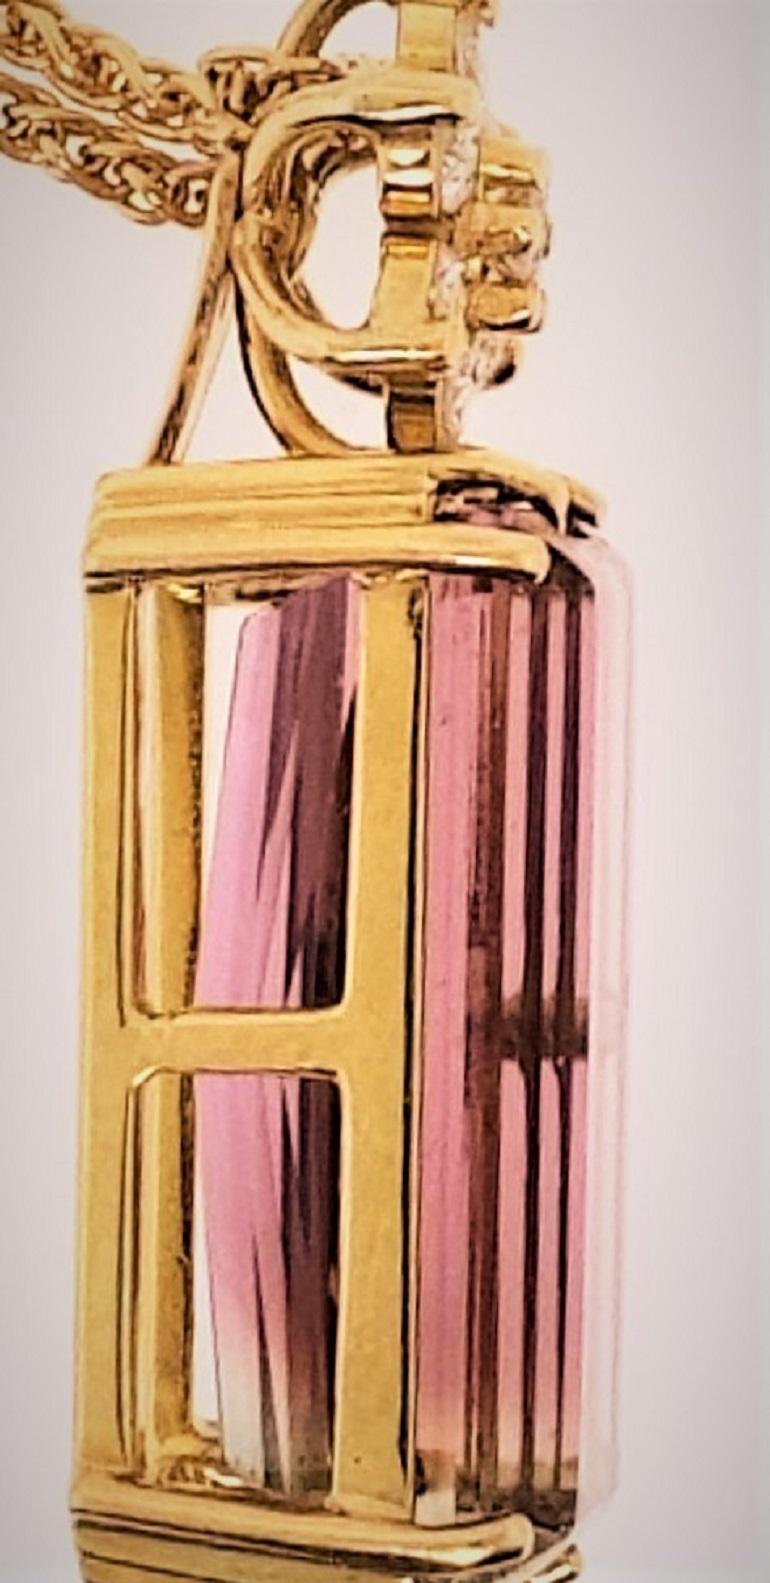 Contemporary 18 Karat Gold, Bi-Color Tourmaline '22.46 Carat' Diamond '0.59 Carat' Pendant For Sale